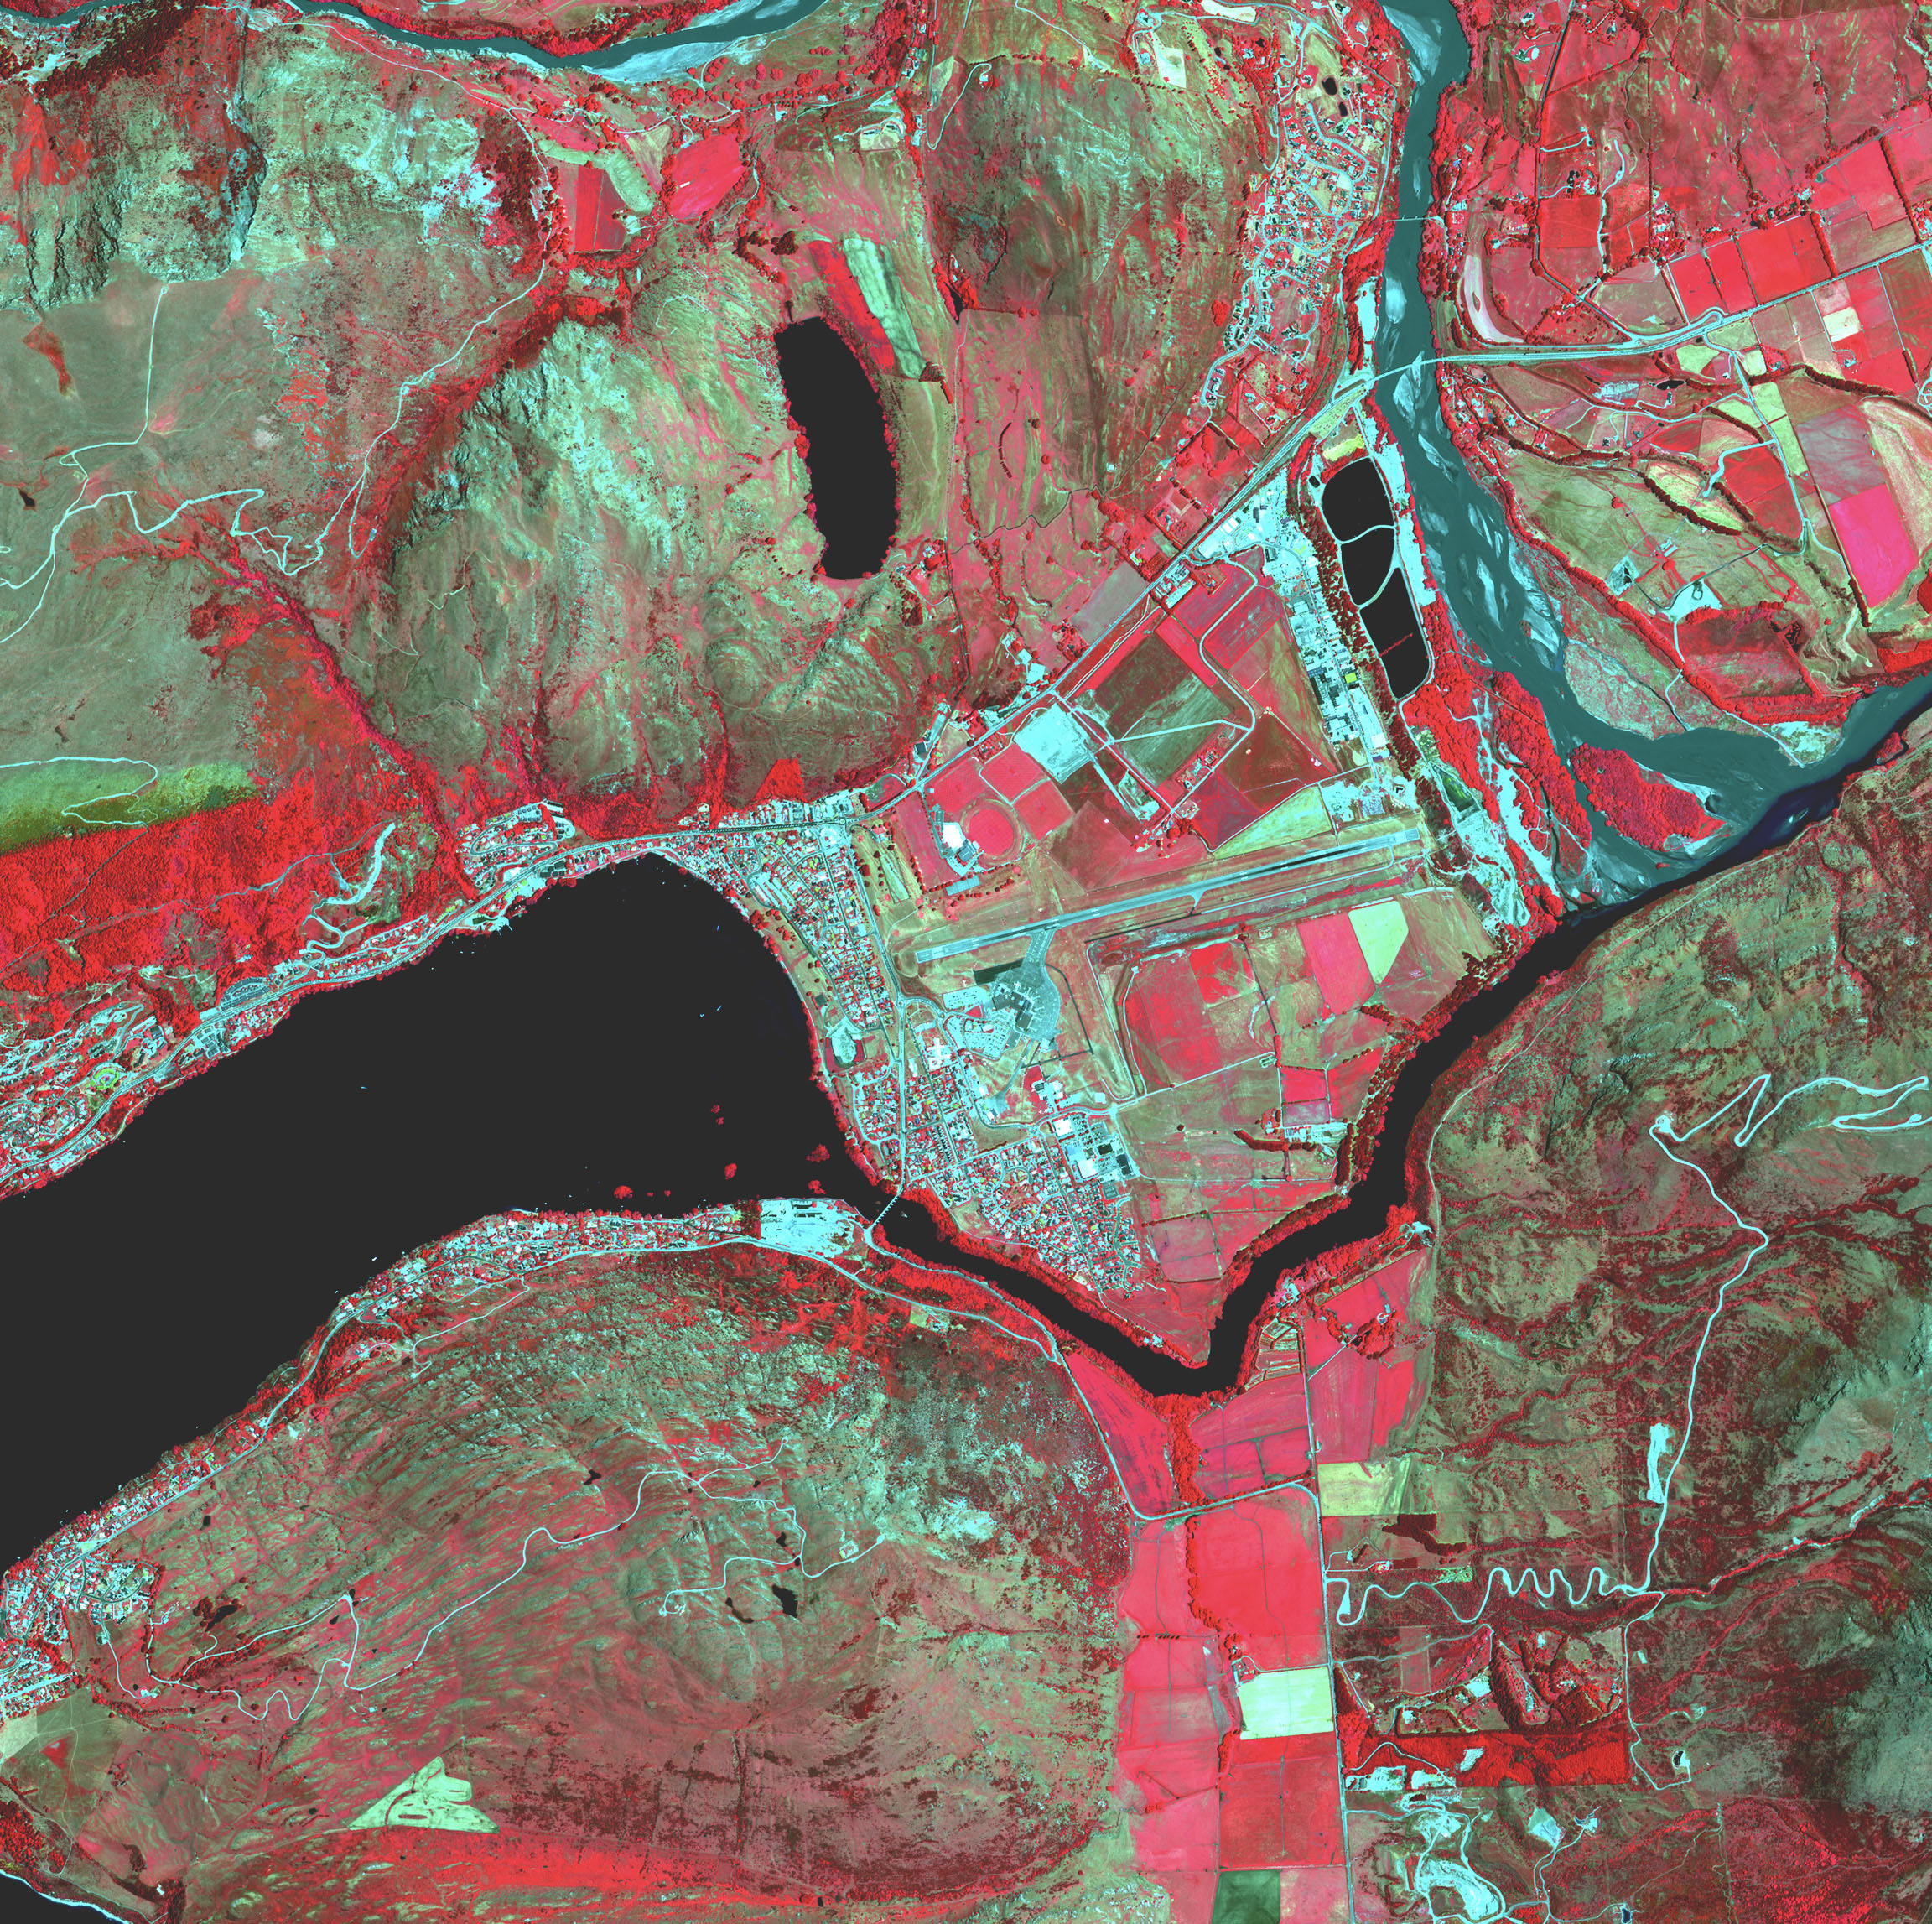 Die Karte einer Stadt an einem Fluss zeigt Brennpunkte und landwirtschaftliche Felder in Rottönen.